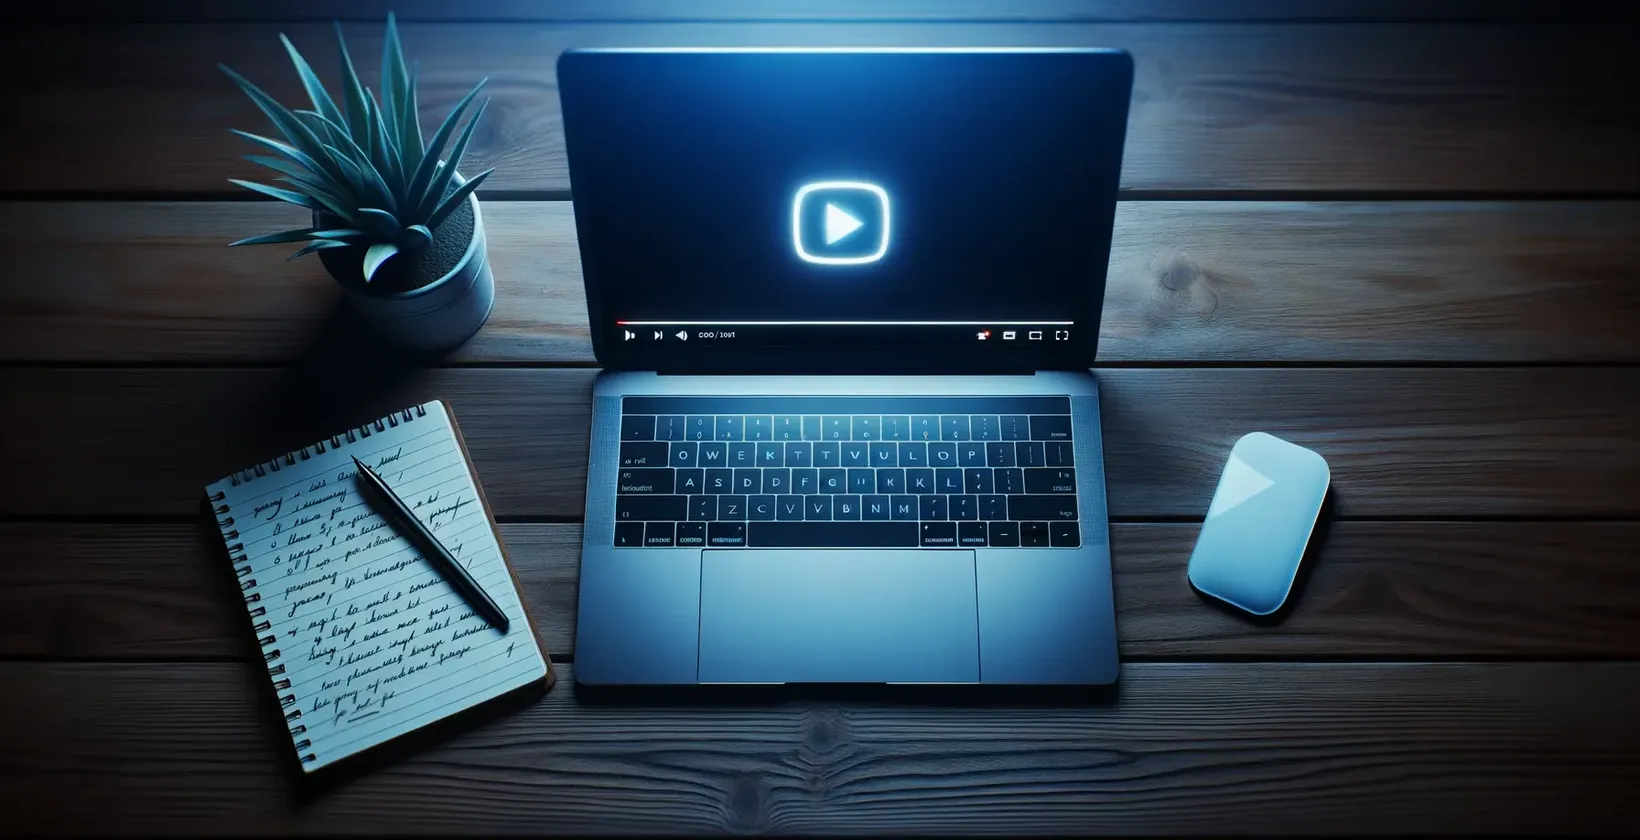 Thêm văn bản vào video với cảnh KineMaster hiển thị máy tính xách tay có biểu tượng phát trên máy tính xách tay